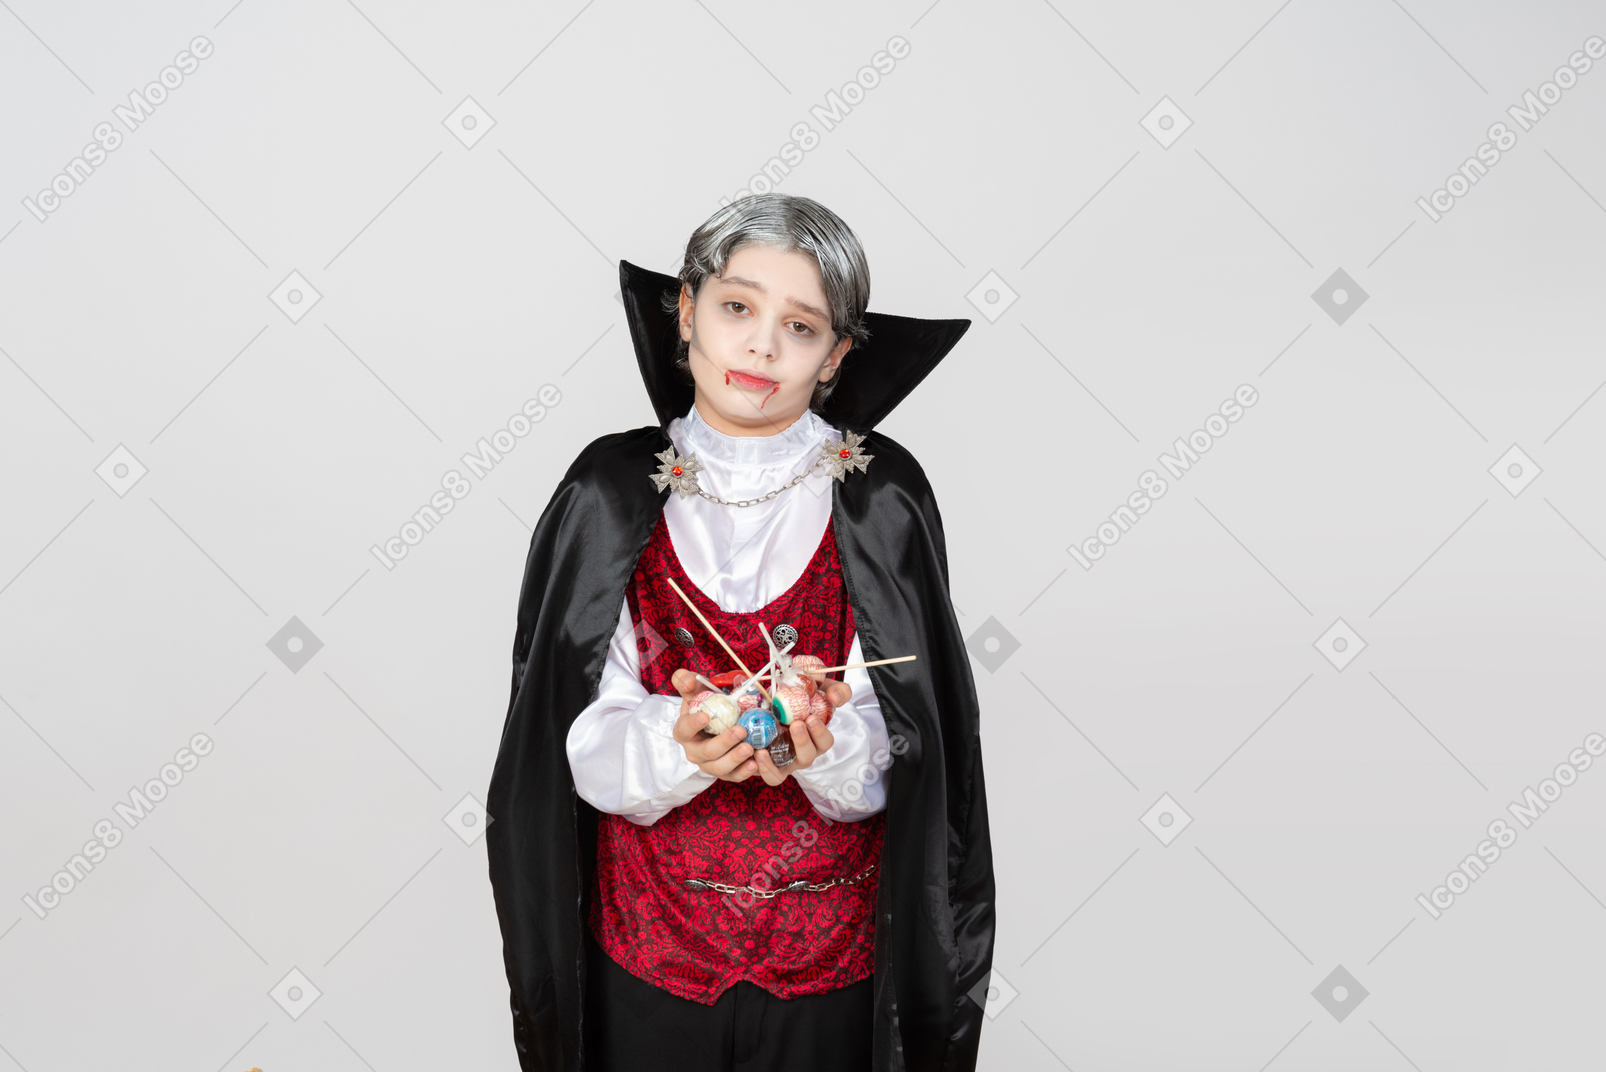 Niño disfrazado de vampiro sosteniendo caramelos